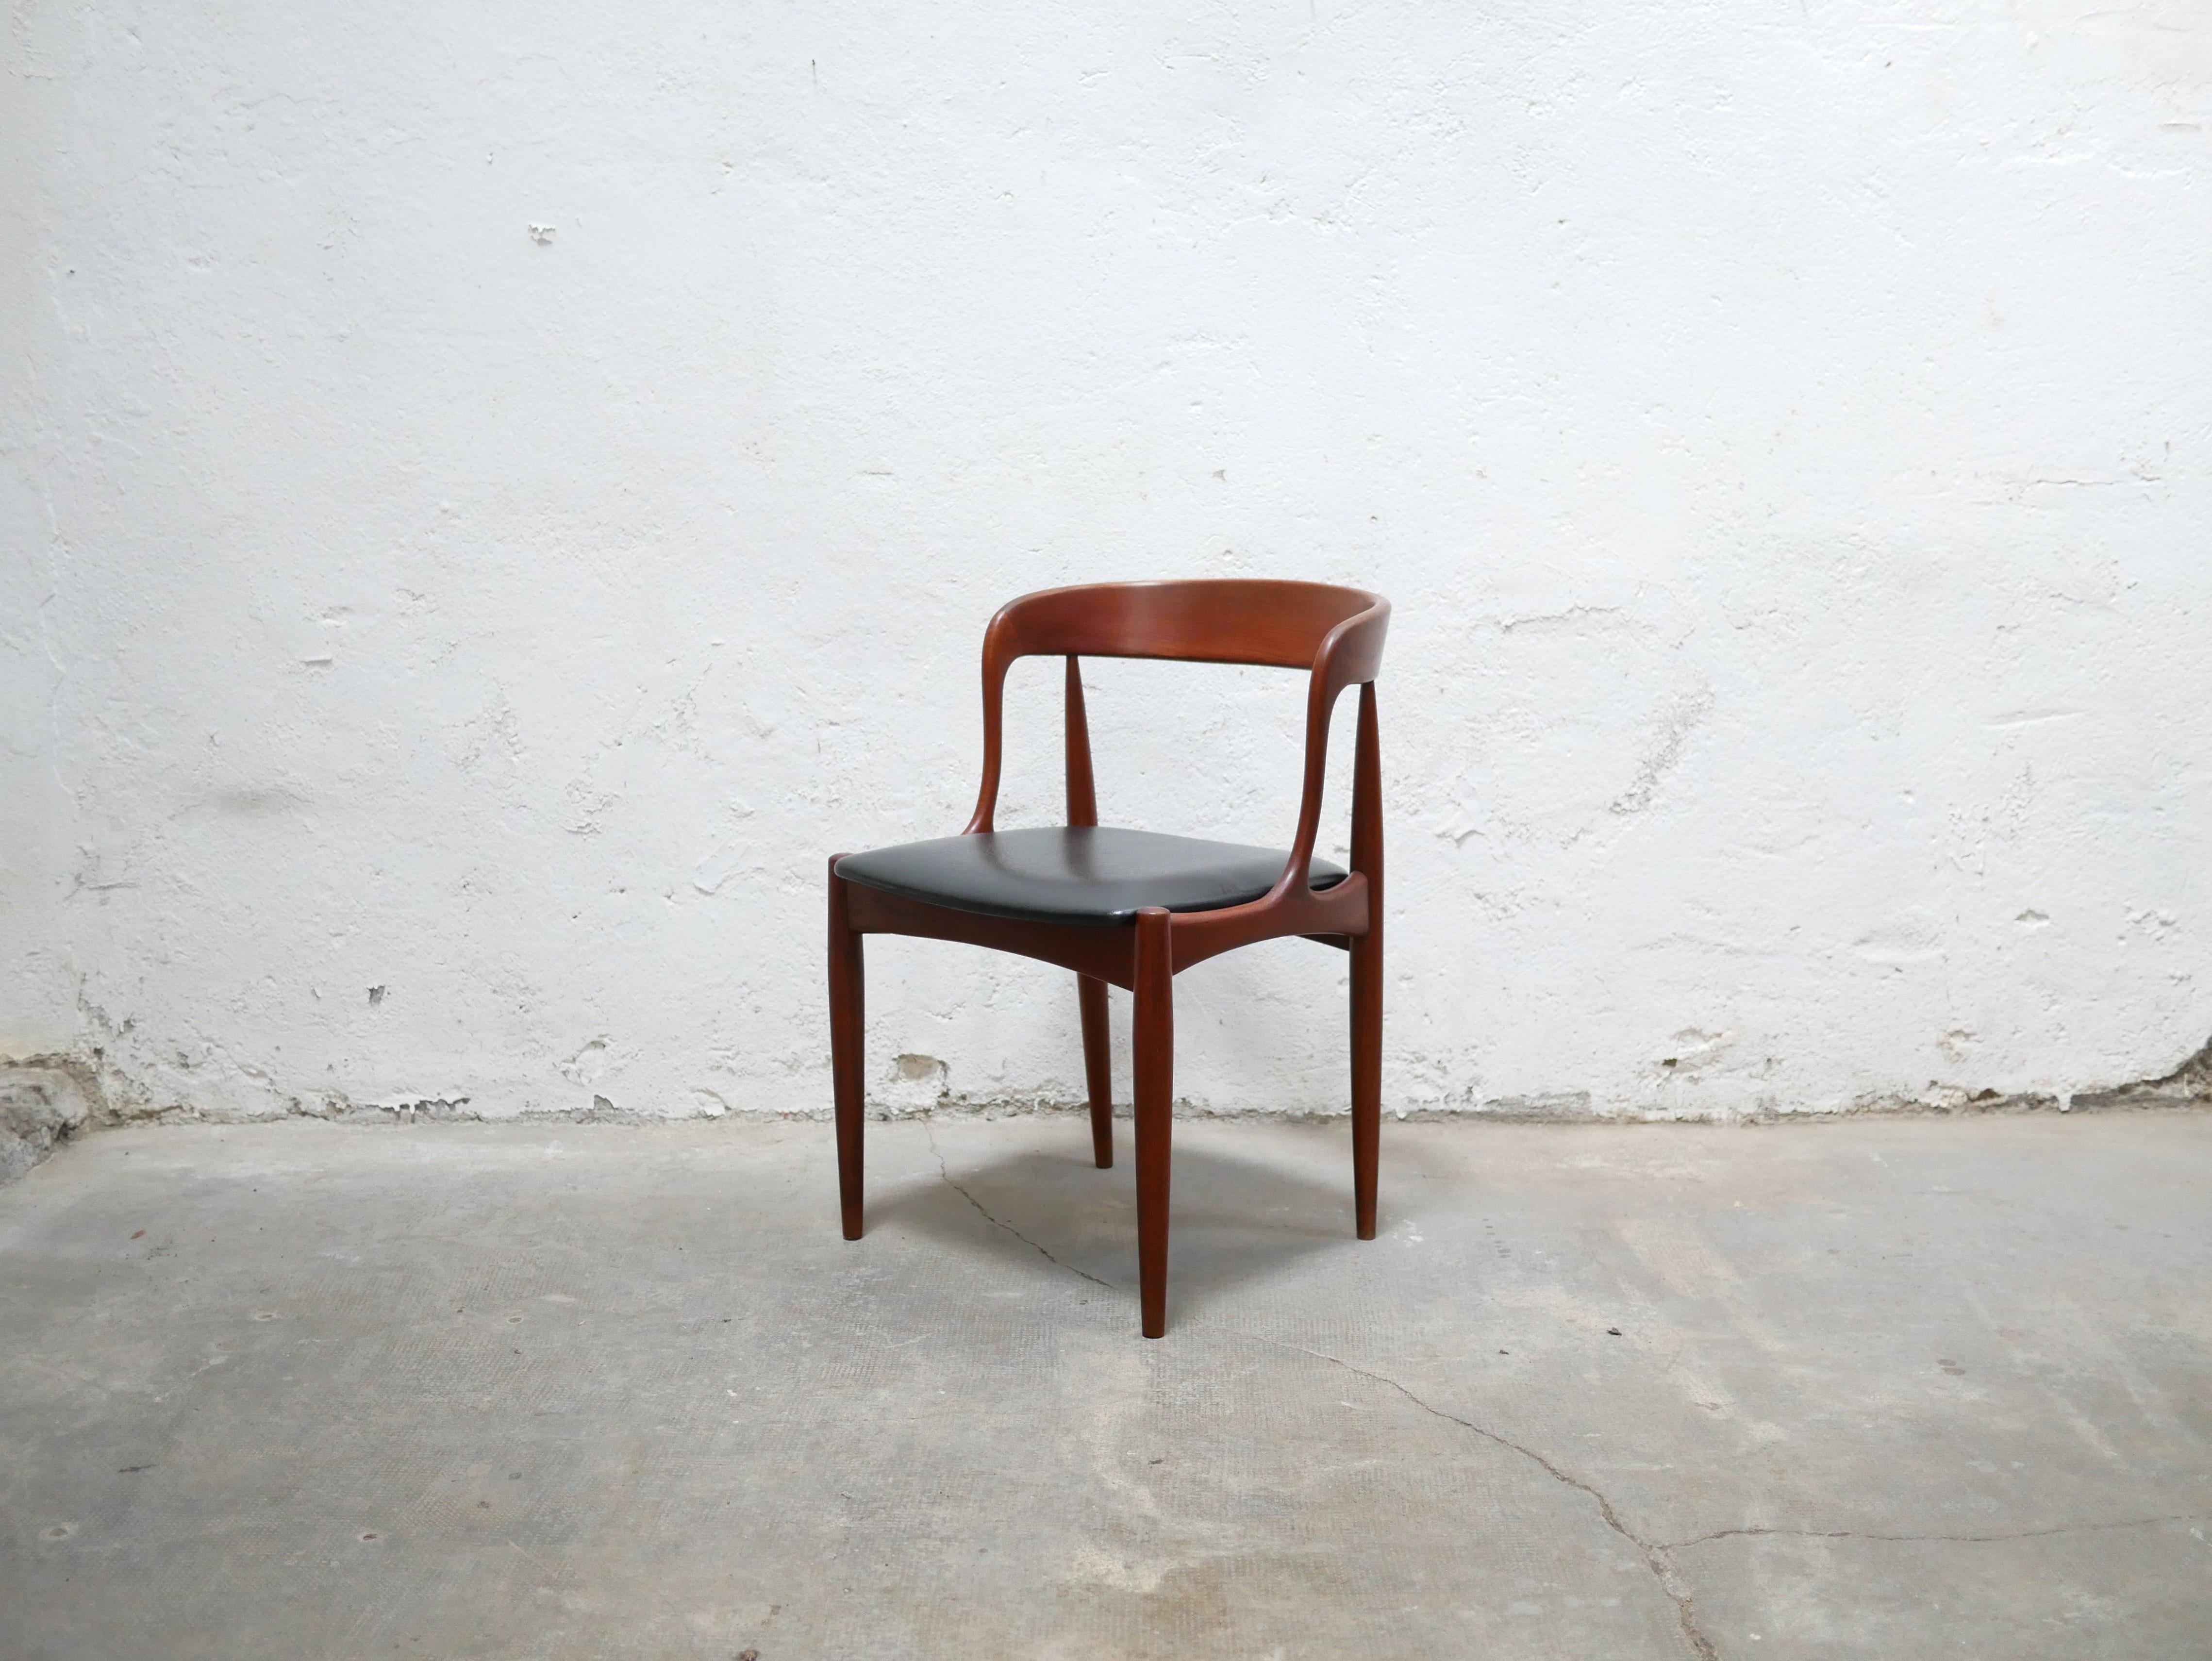 Série de 4 chaises conçues par le designer danois Johannes Andersen pour Uldum Møbelfabrik dans les années 1960. Les chaises ont été distribuées par Samcom, à Paris.

Leurs lignes scandinaves et leur belle qualité de fabrication leur confèrent